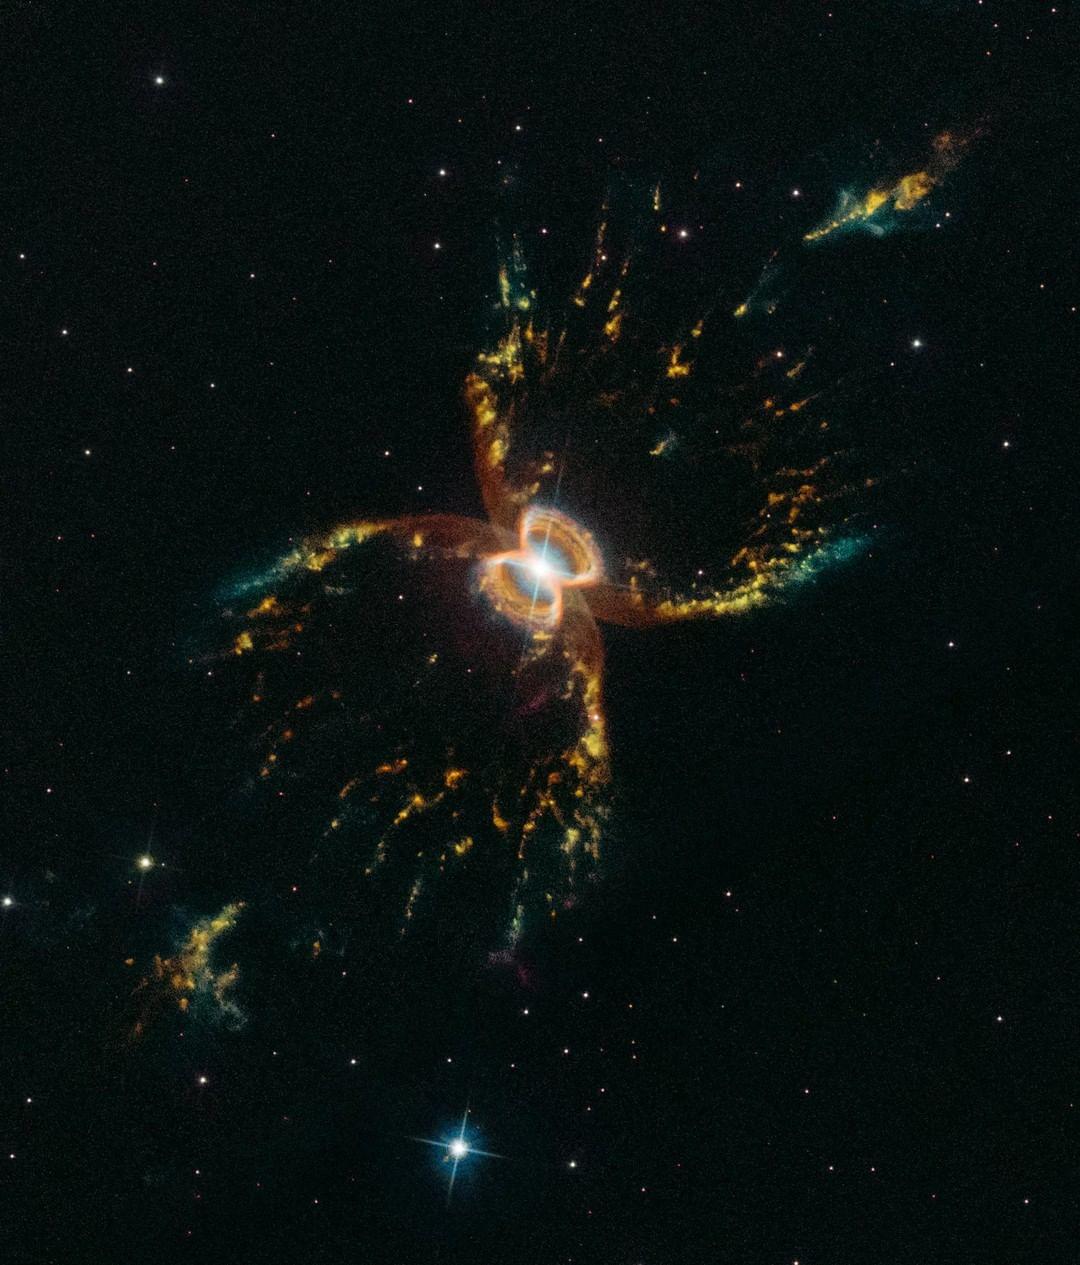  哈勃太空望远镜拍摄的南蟹状星云，距地球6849光年。 